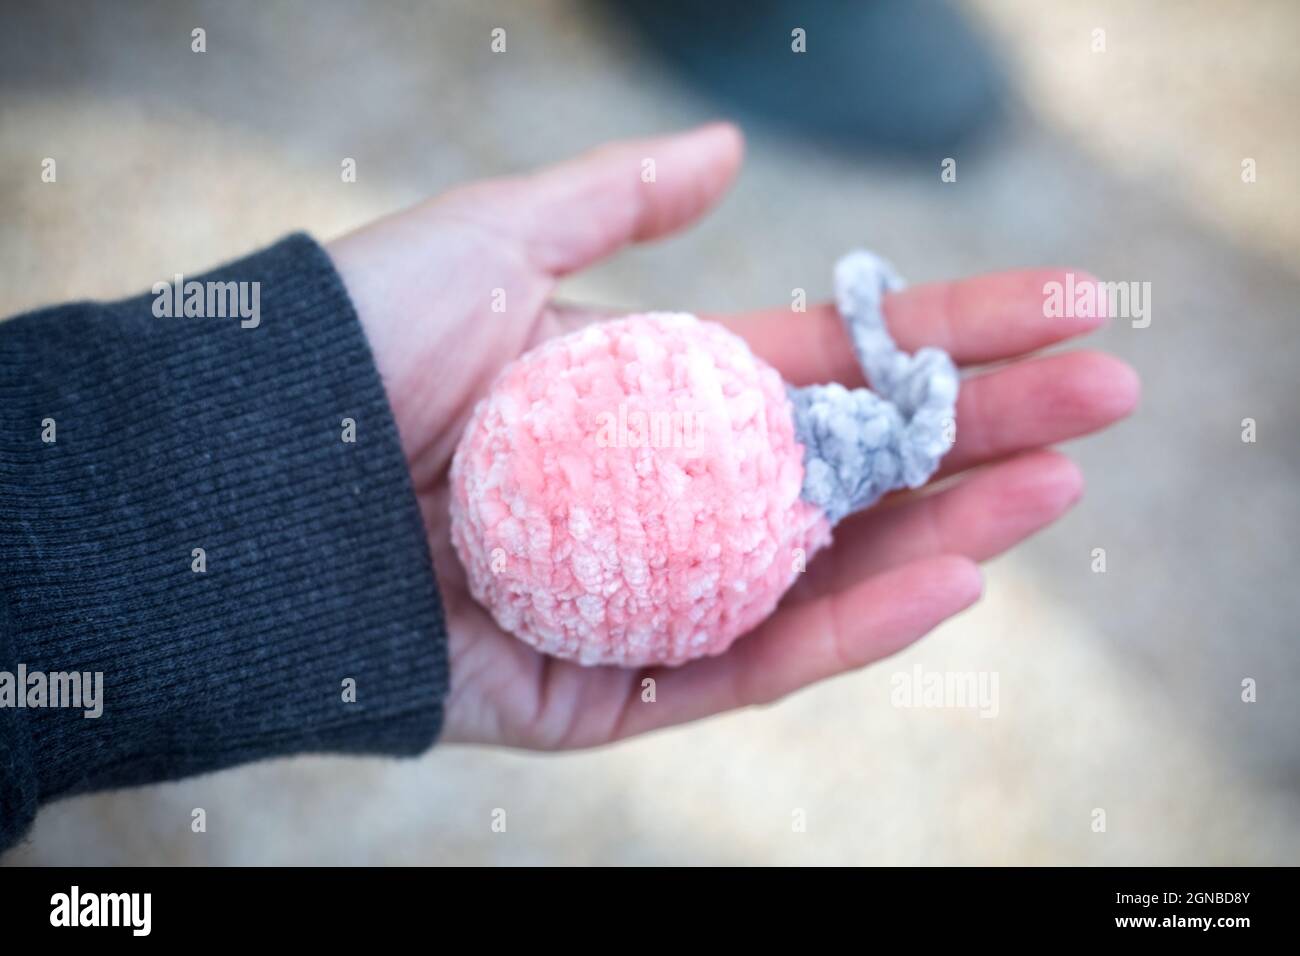 Rose año nuevo bola amigurumi en la mano de la mujer al aire libre. Tejido de peluche de hilo suave para la decoración navideña. Regalos navideños hechos a mano. Fabricación Foto de stock